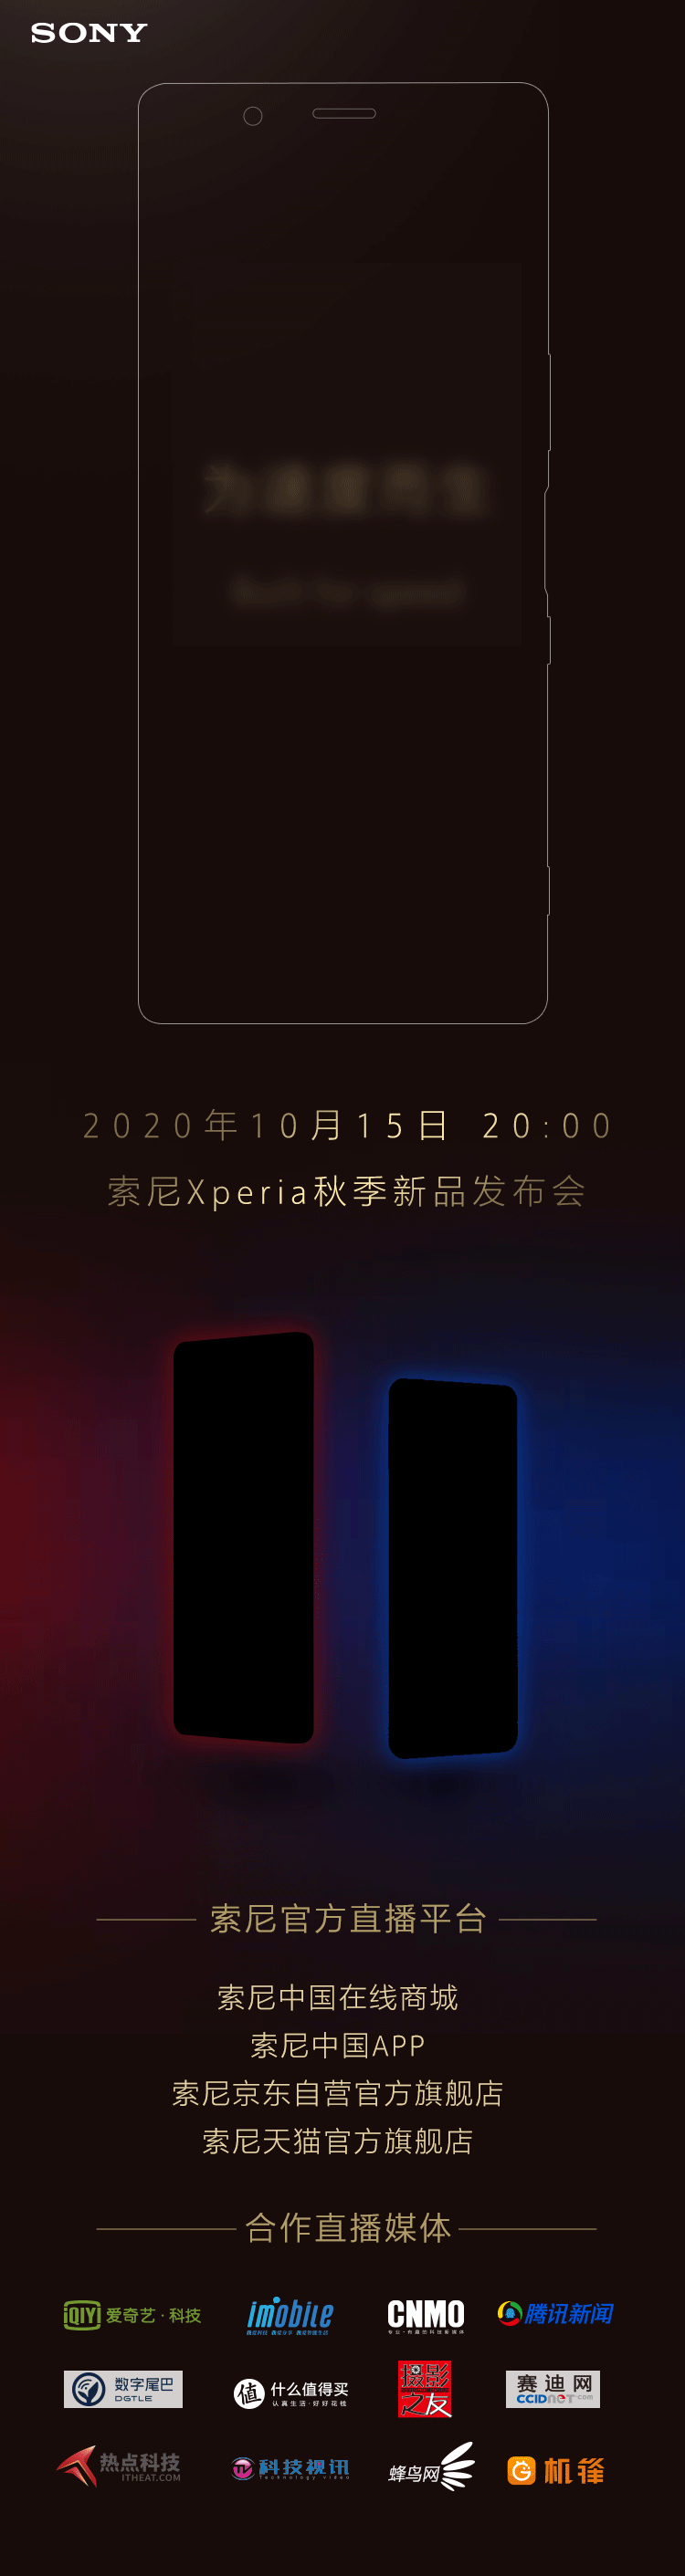 索尼Xperia5Ⅱ國行版即將上市,售價約7000元